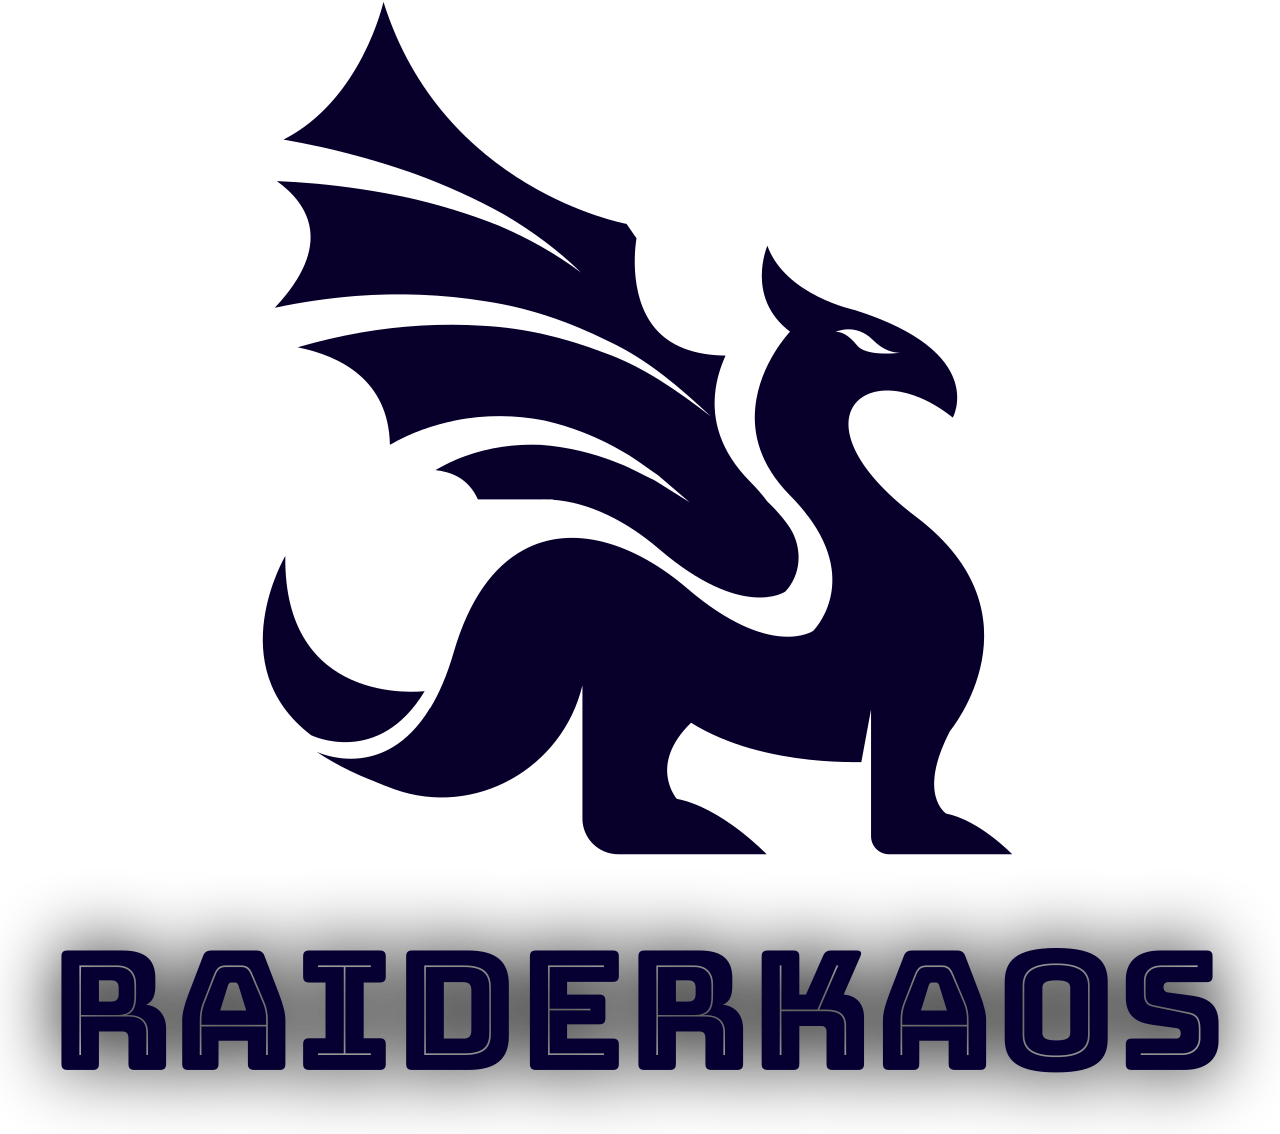 RaiderKaos's web page